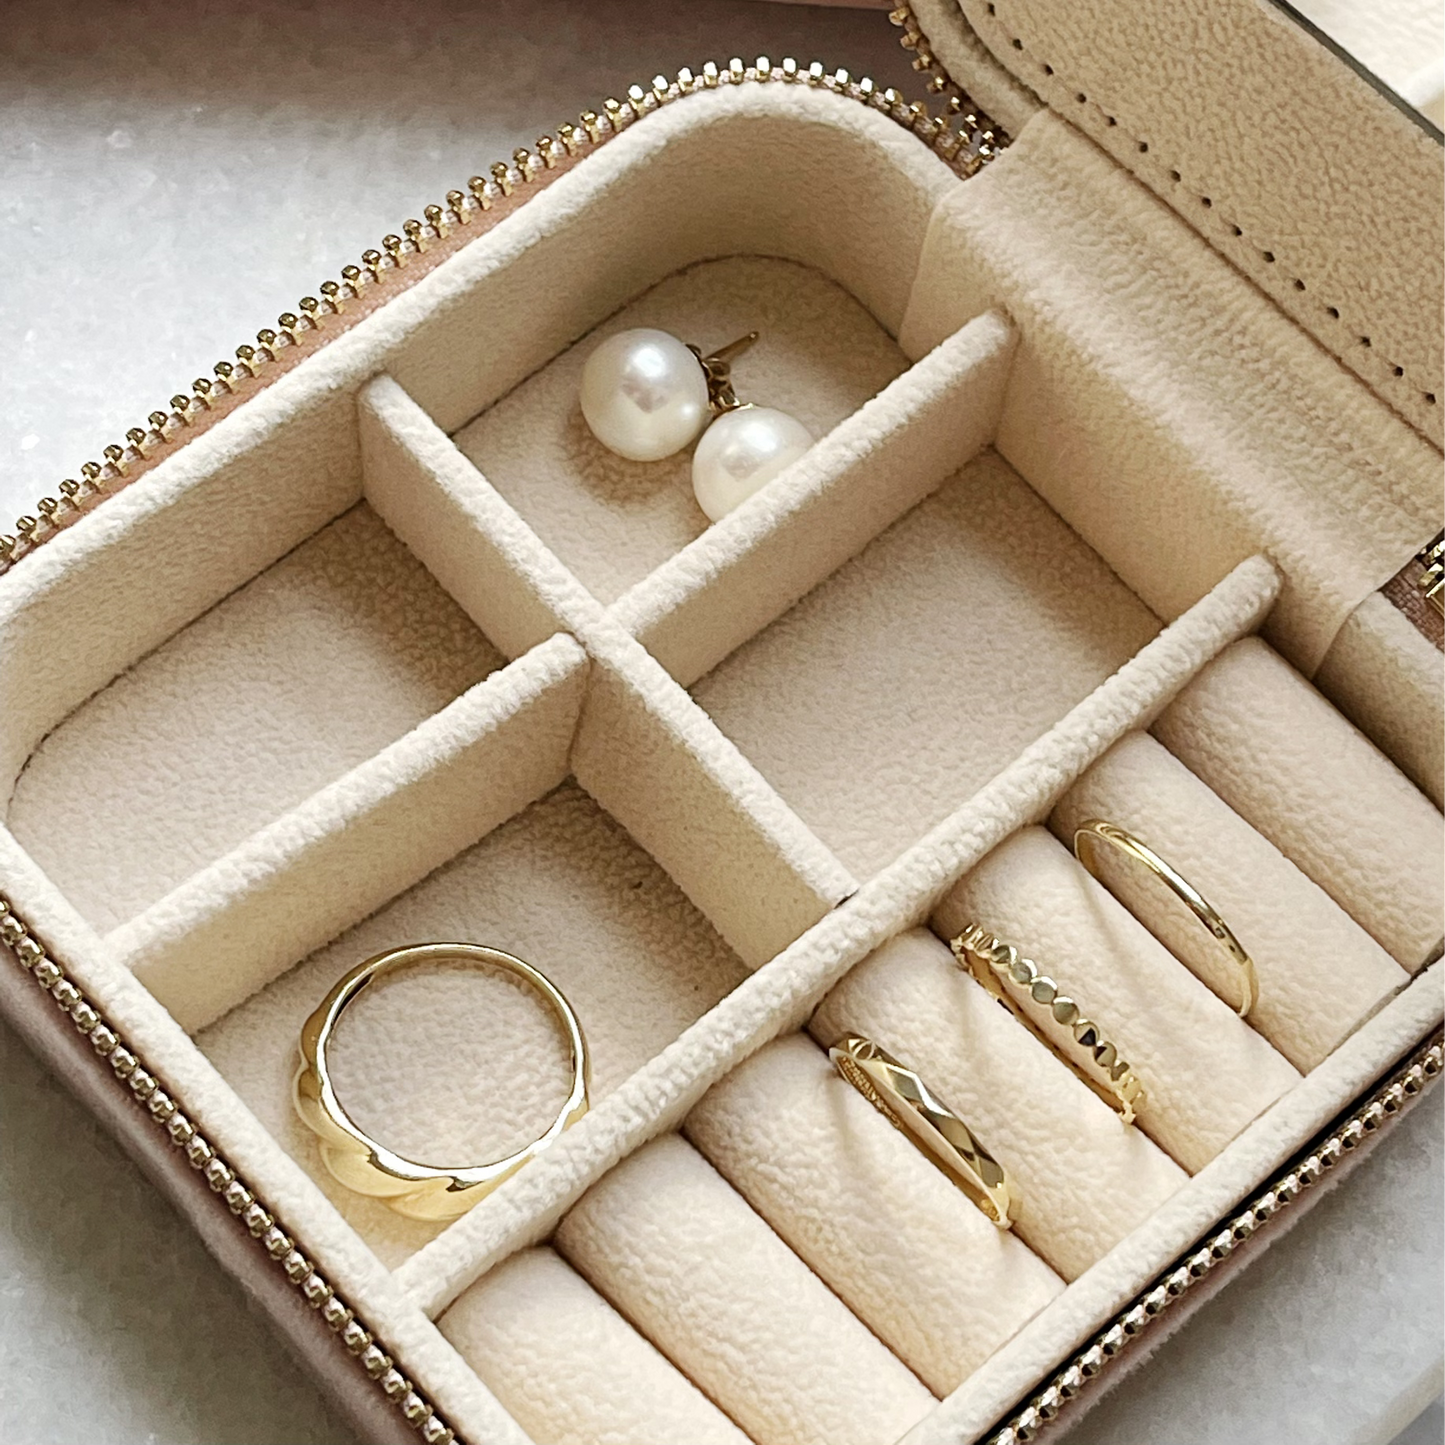 Luxe Corey Treacy Designs travel jewelry box